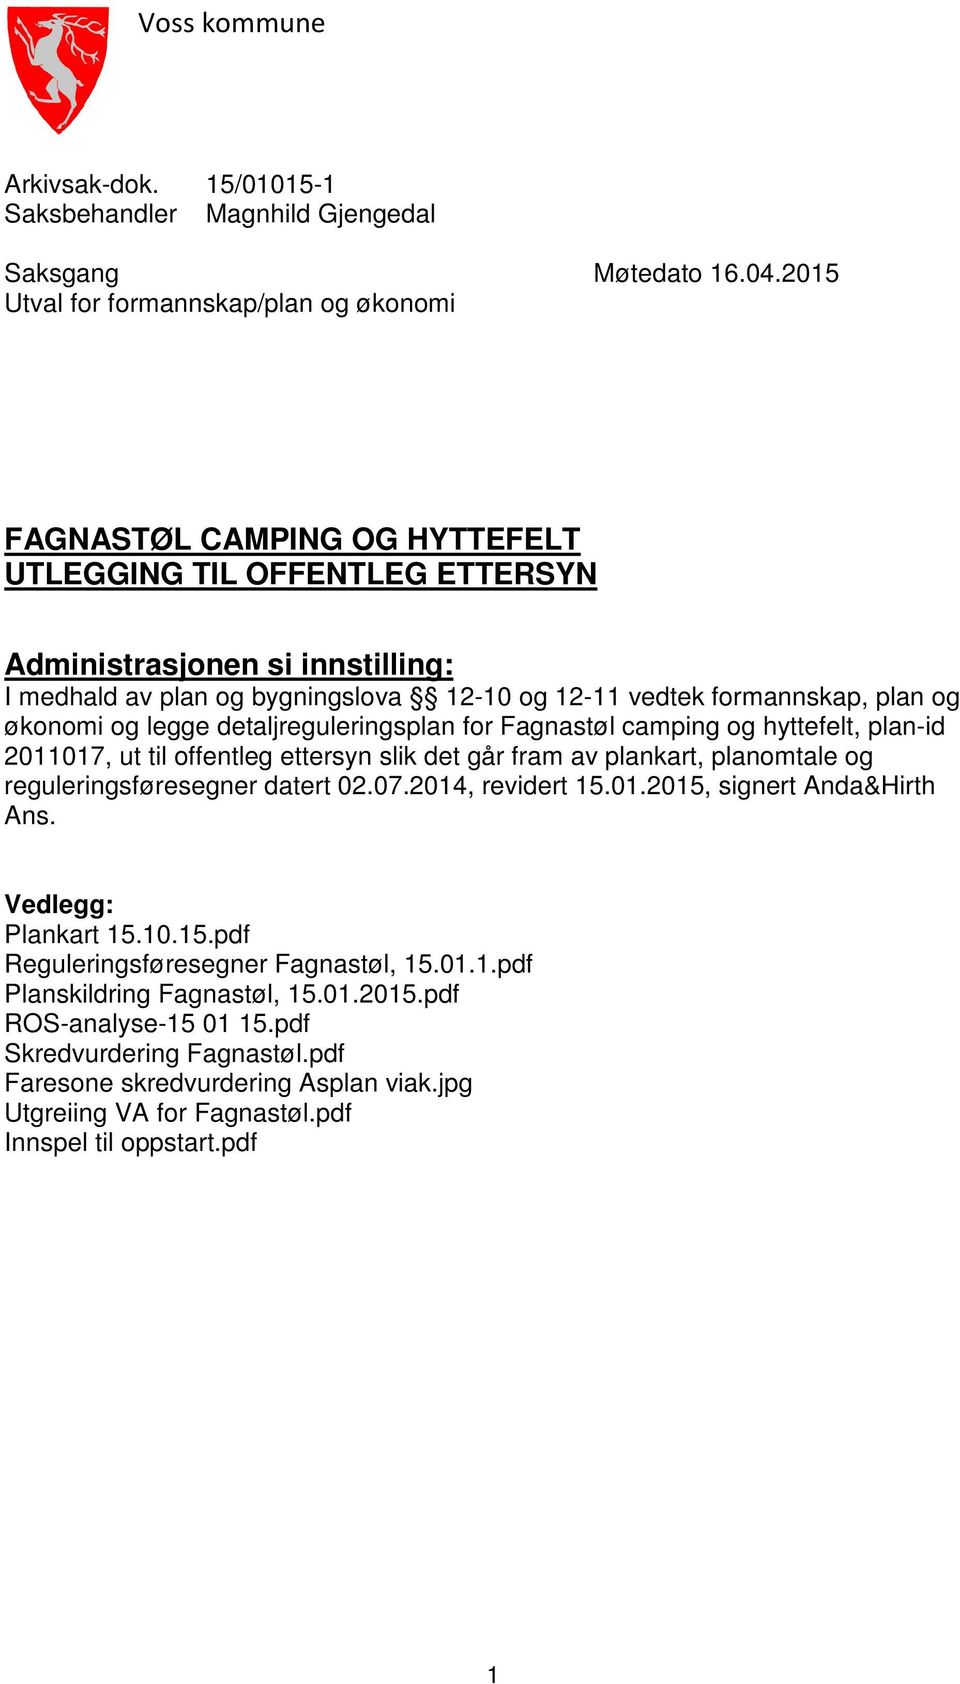 formannskap, plan og økonomi og legge detaljreguleringsplan for Fagnastøl camping og hyttefelt, plan-id 2011017, ut til offentleg ettersyn slik det går fram av plankart, planomtale og